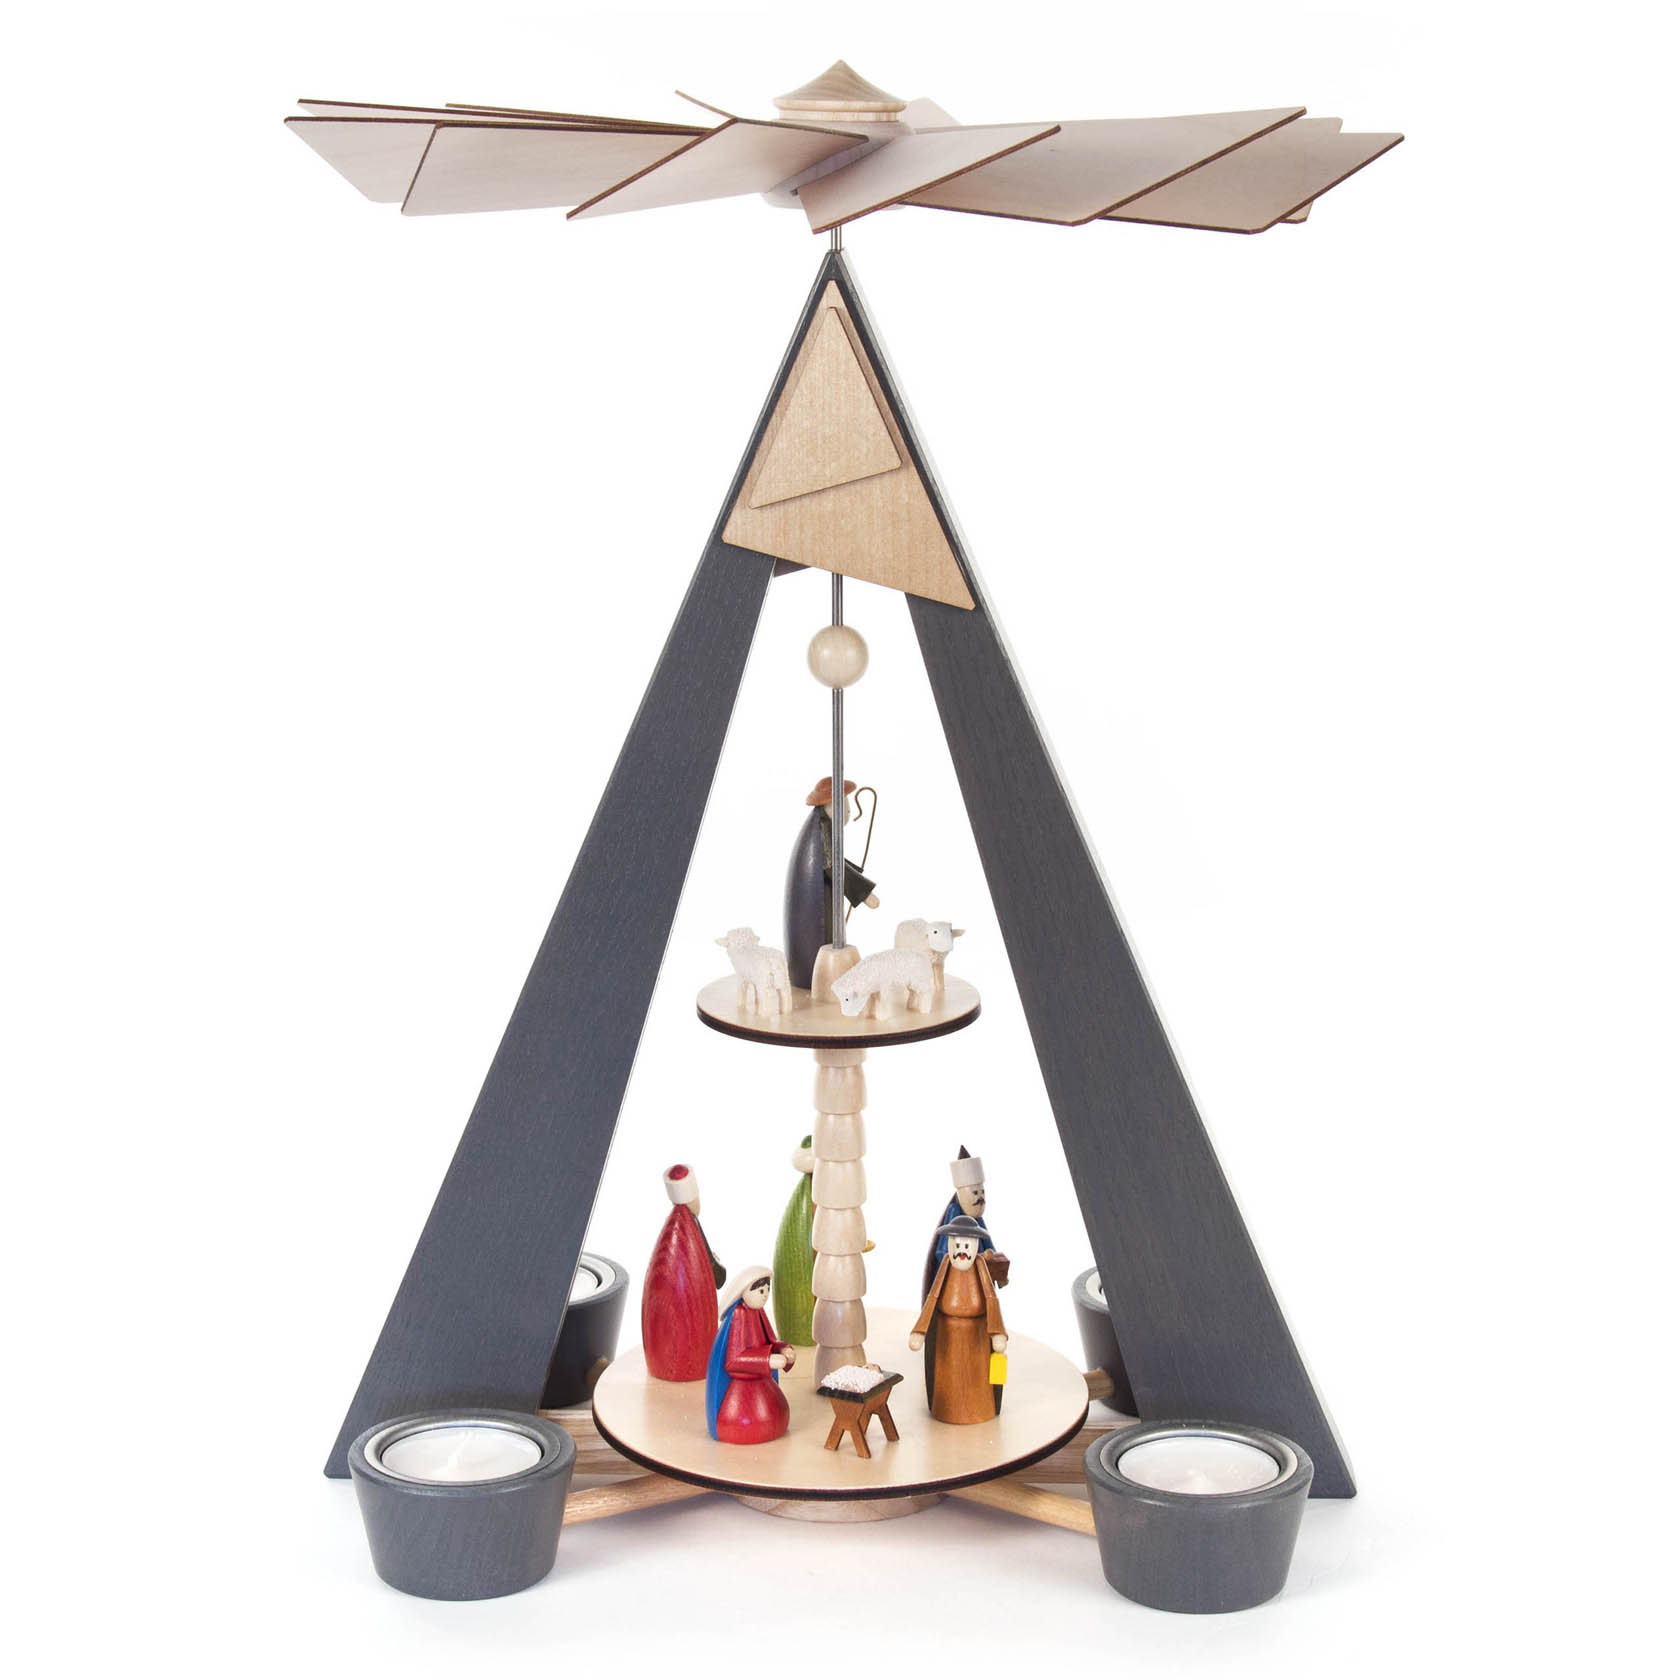 Pyramide mit Christi Geburt grau und farbigen Figuren, 2-stöckig, für Teelichte im Dregeno Online Shop günstig kaufen